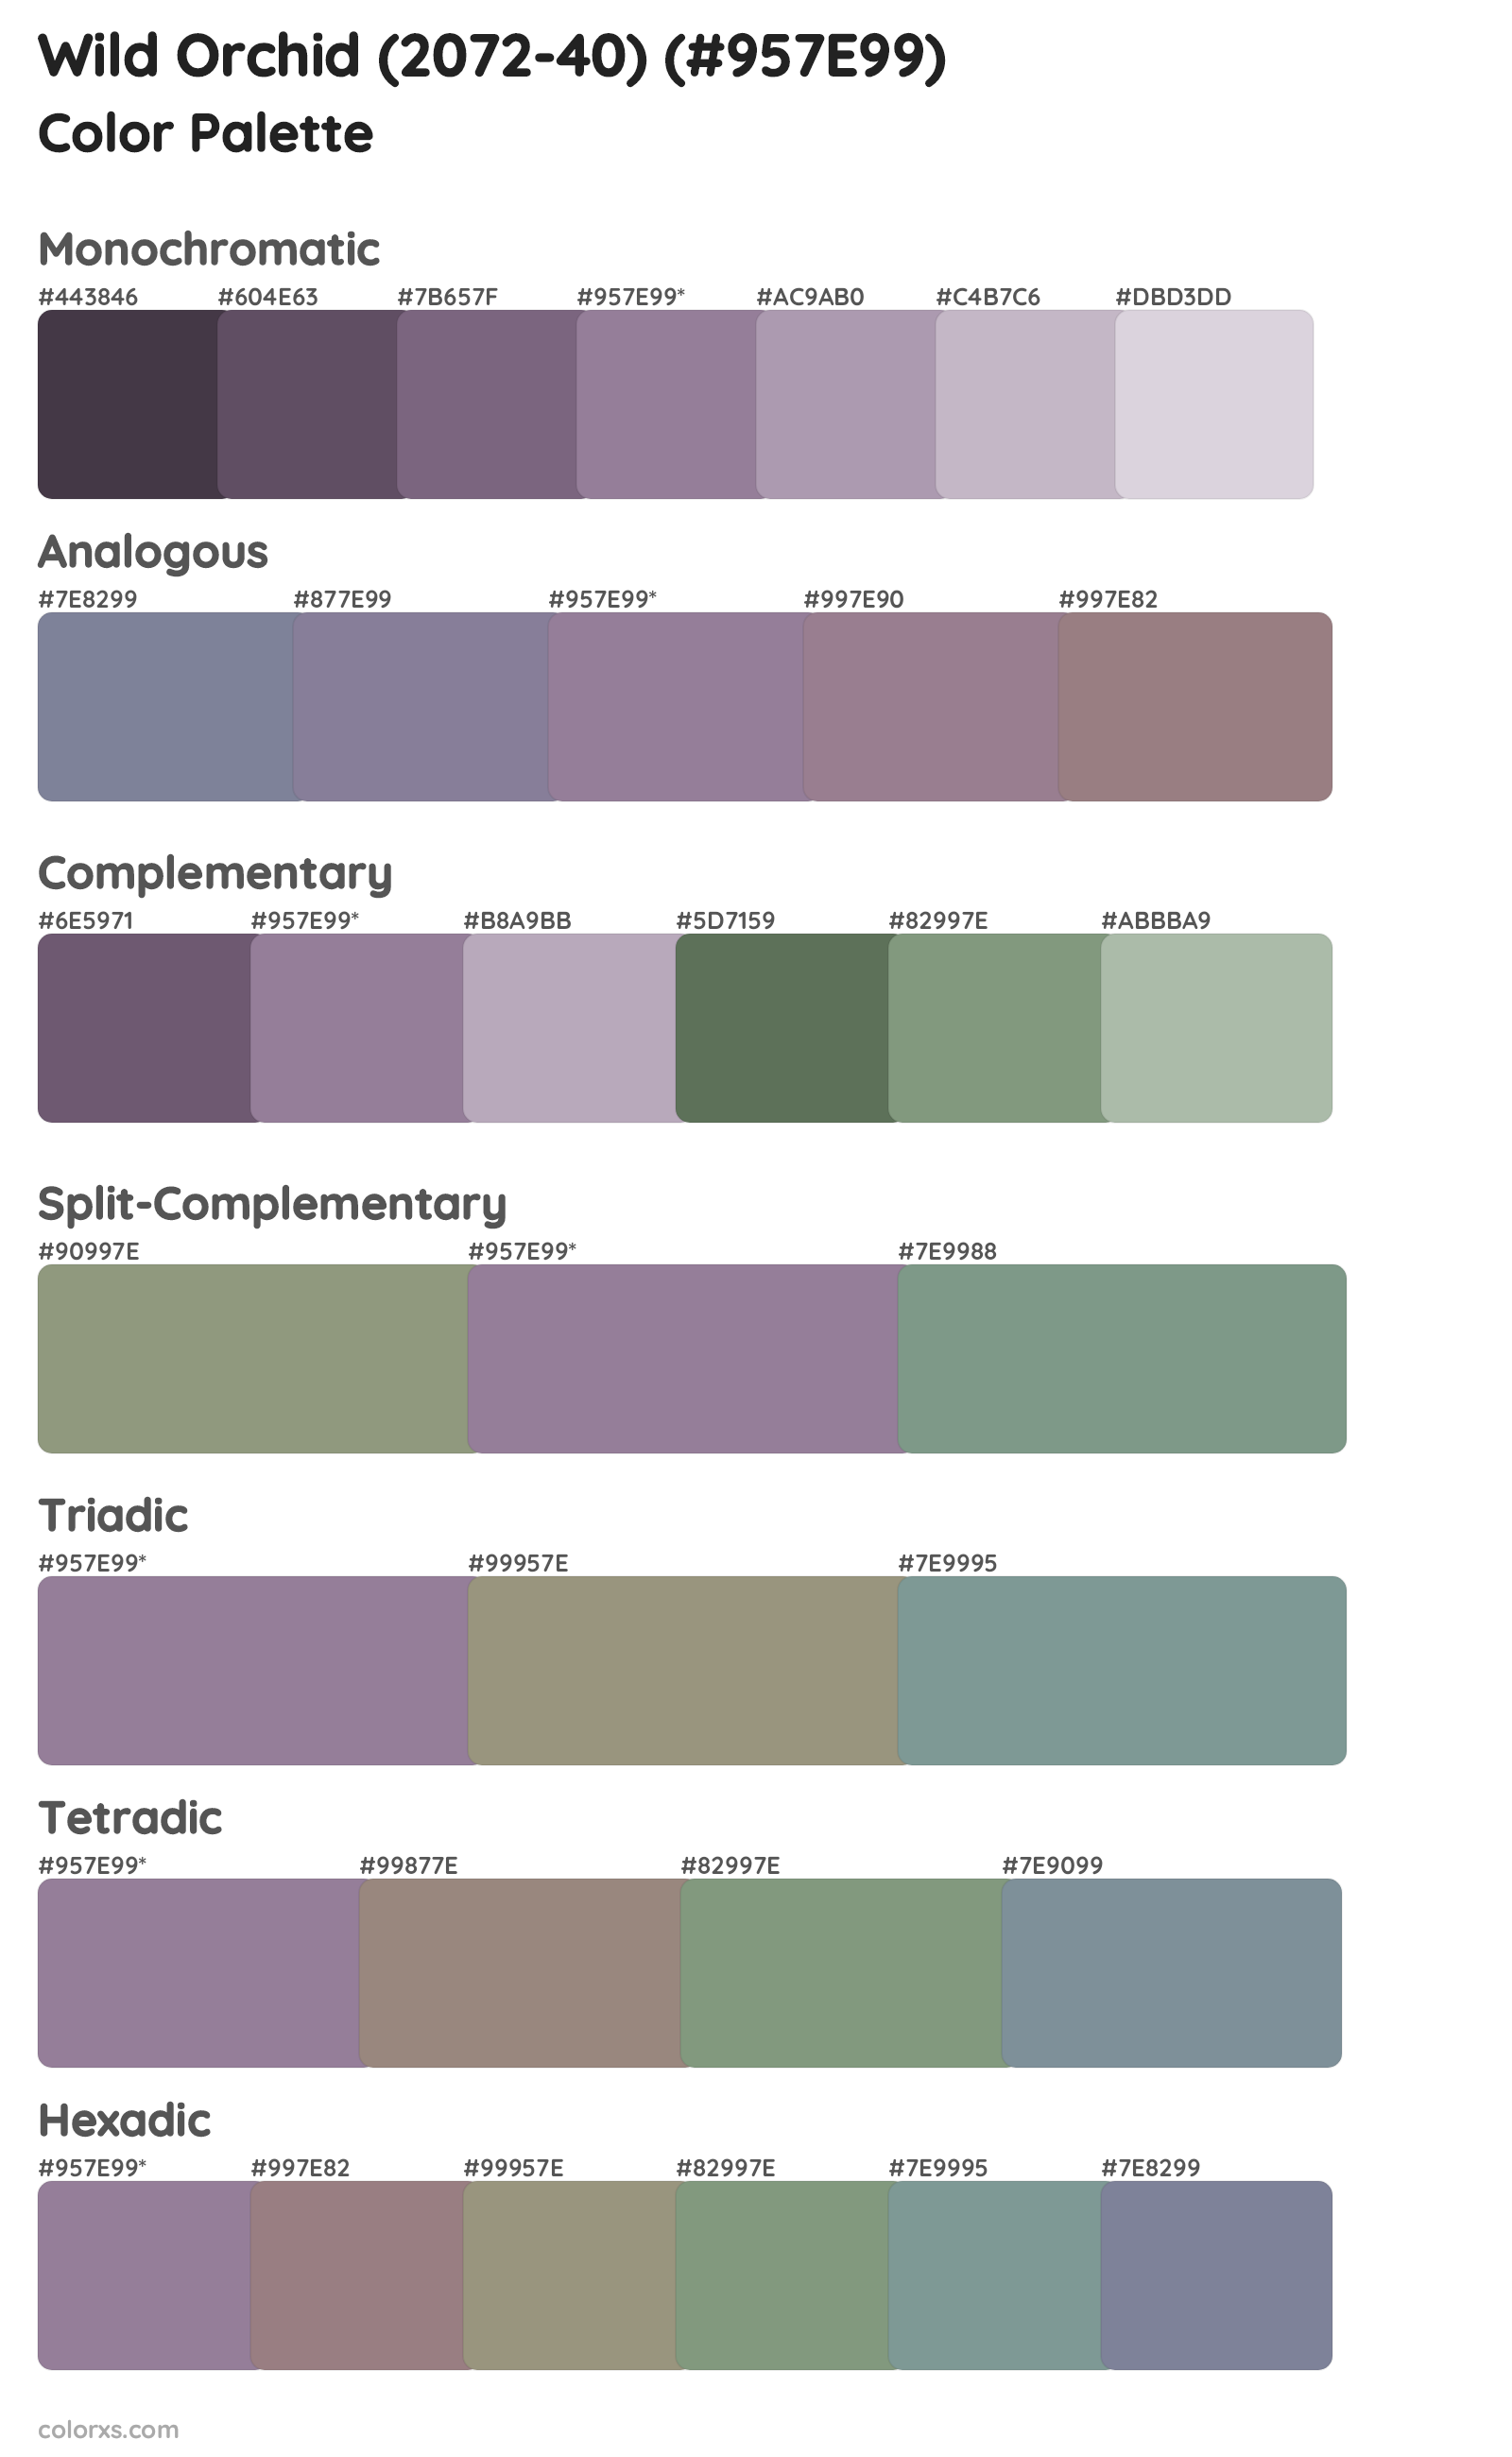 Wild Orchid (2072-40) Color Scheme Palettes